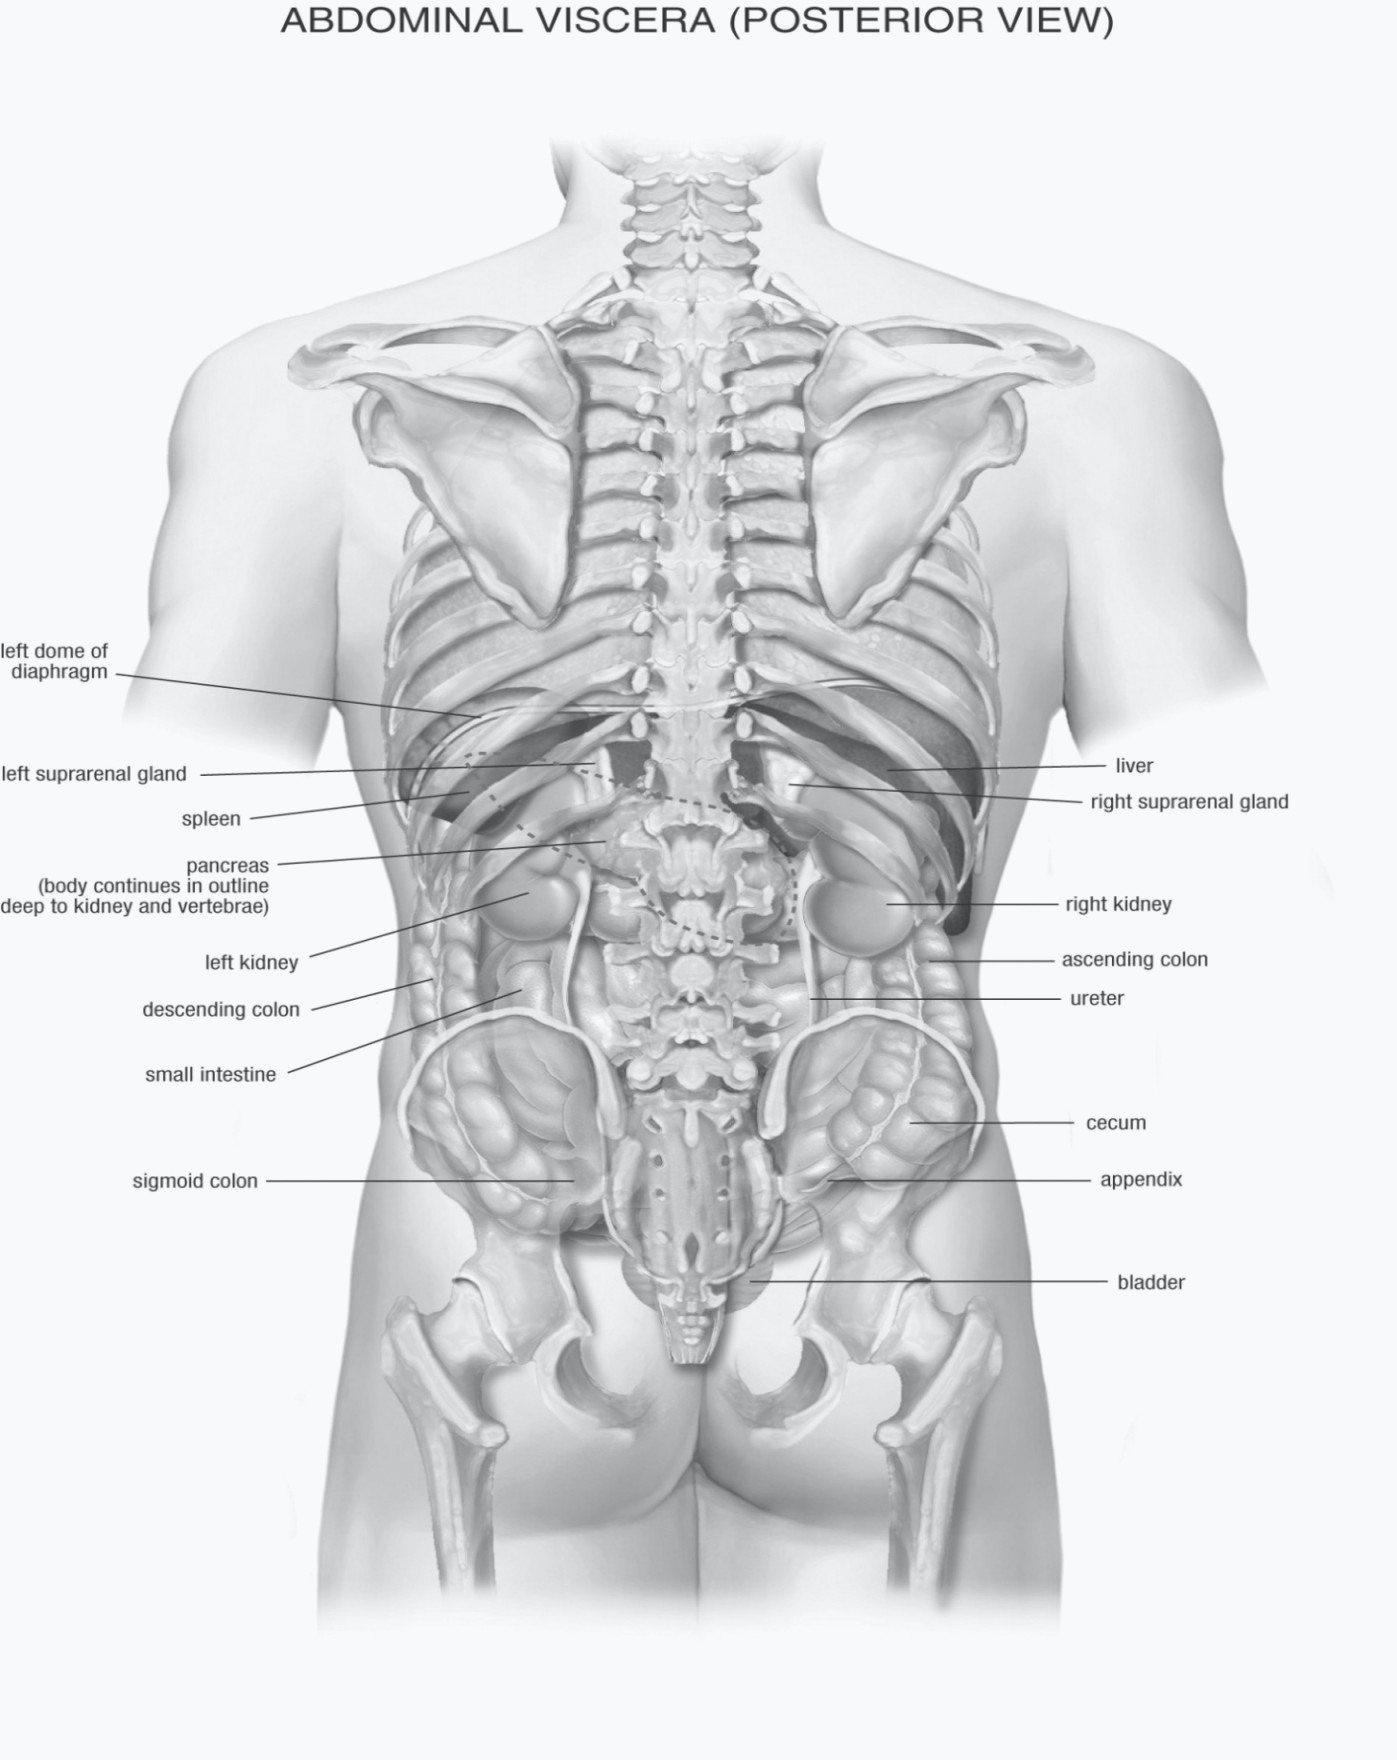 фото органов сзади расположение внутренних